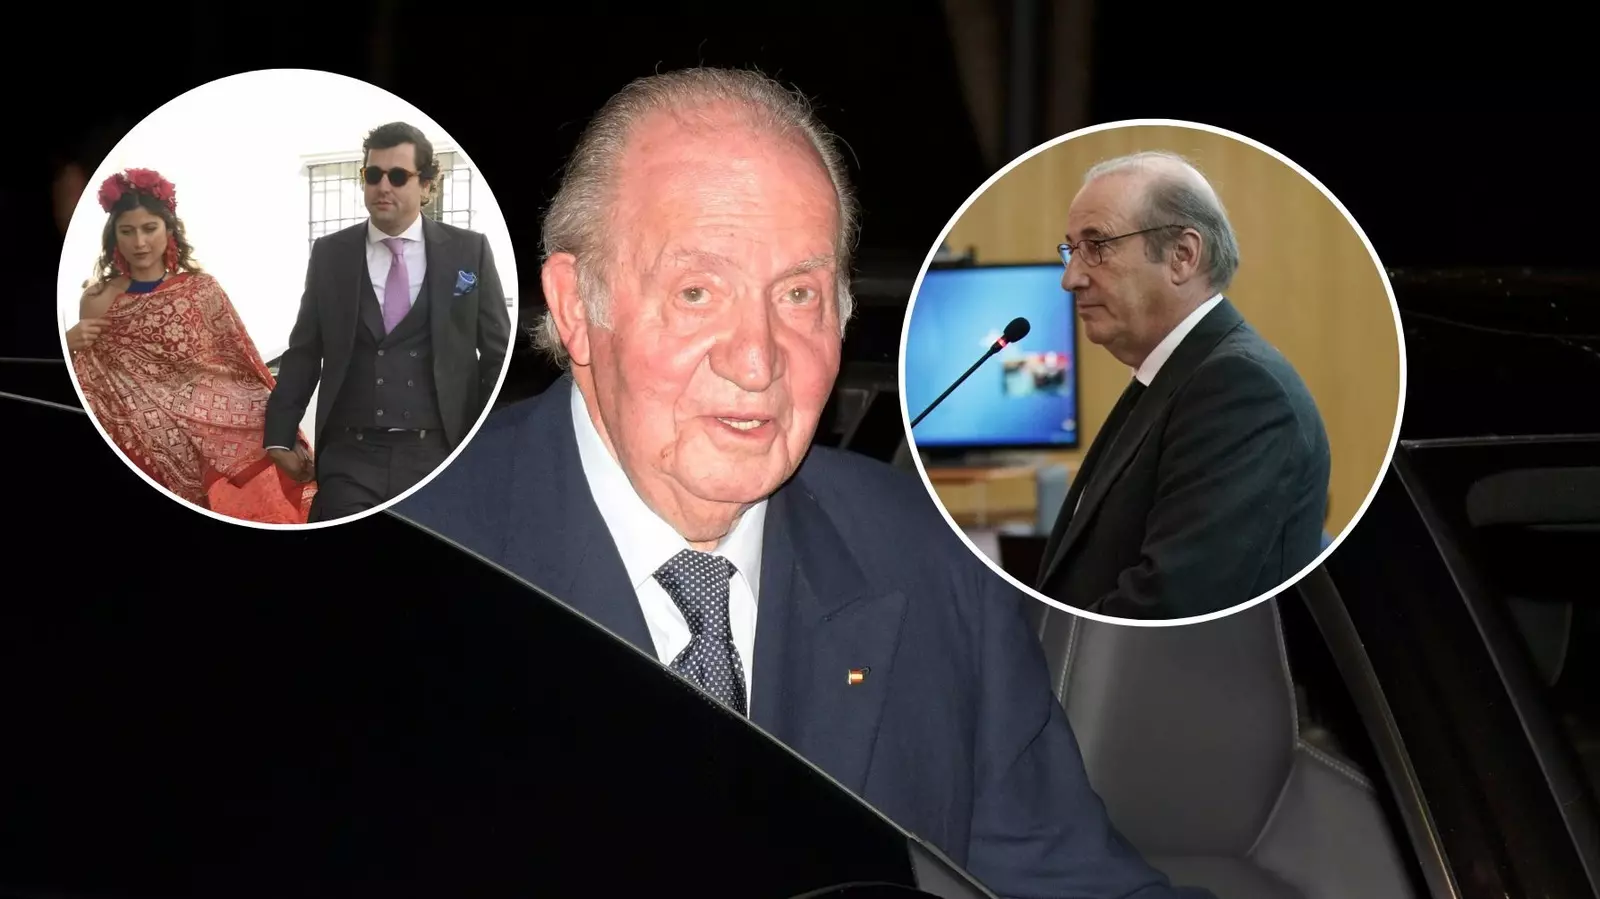 El rey Juan Carlos tiene boda este fin de semana, la del hijo de Francis Franco Martínez-Bordiú con Khali El Assir